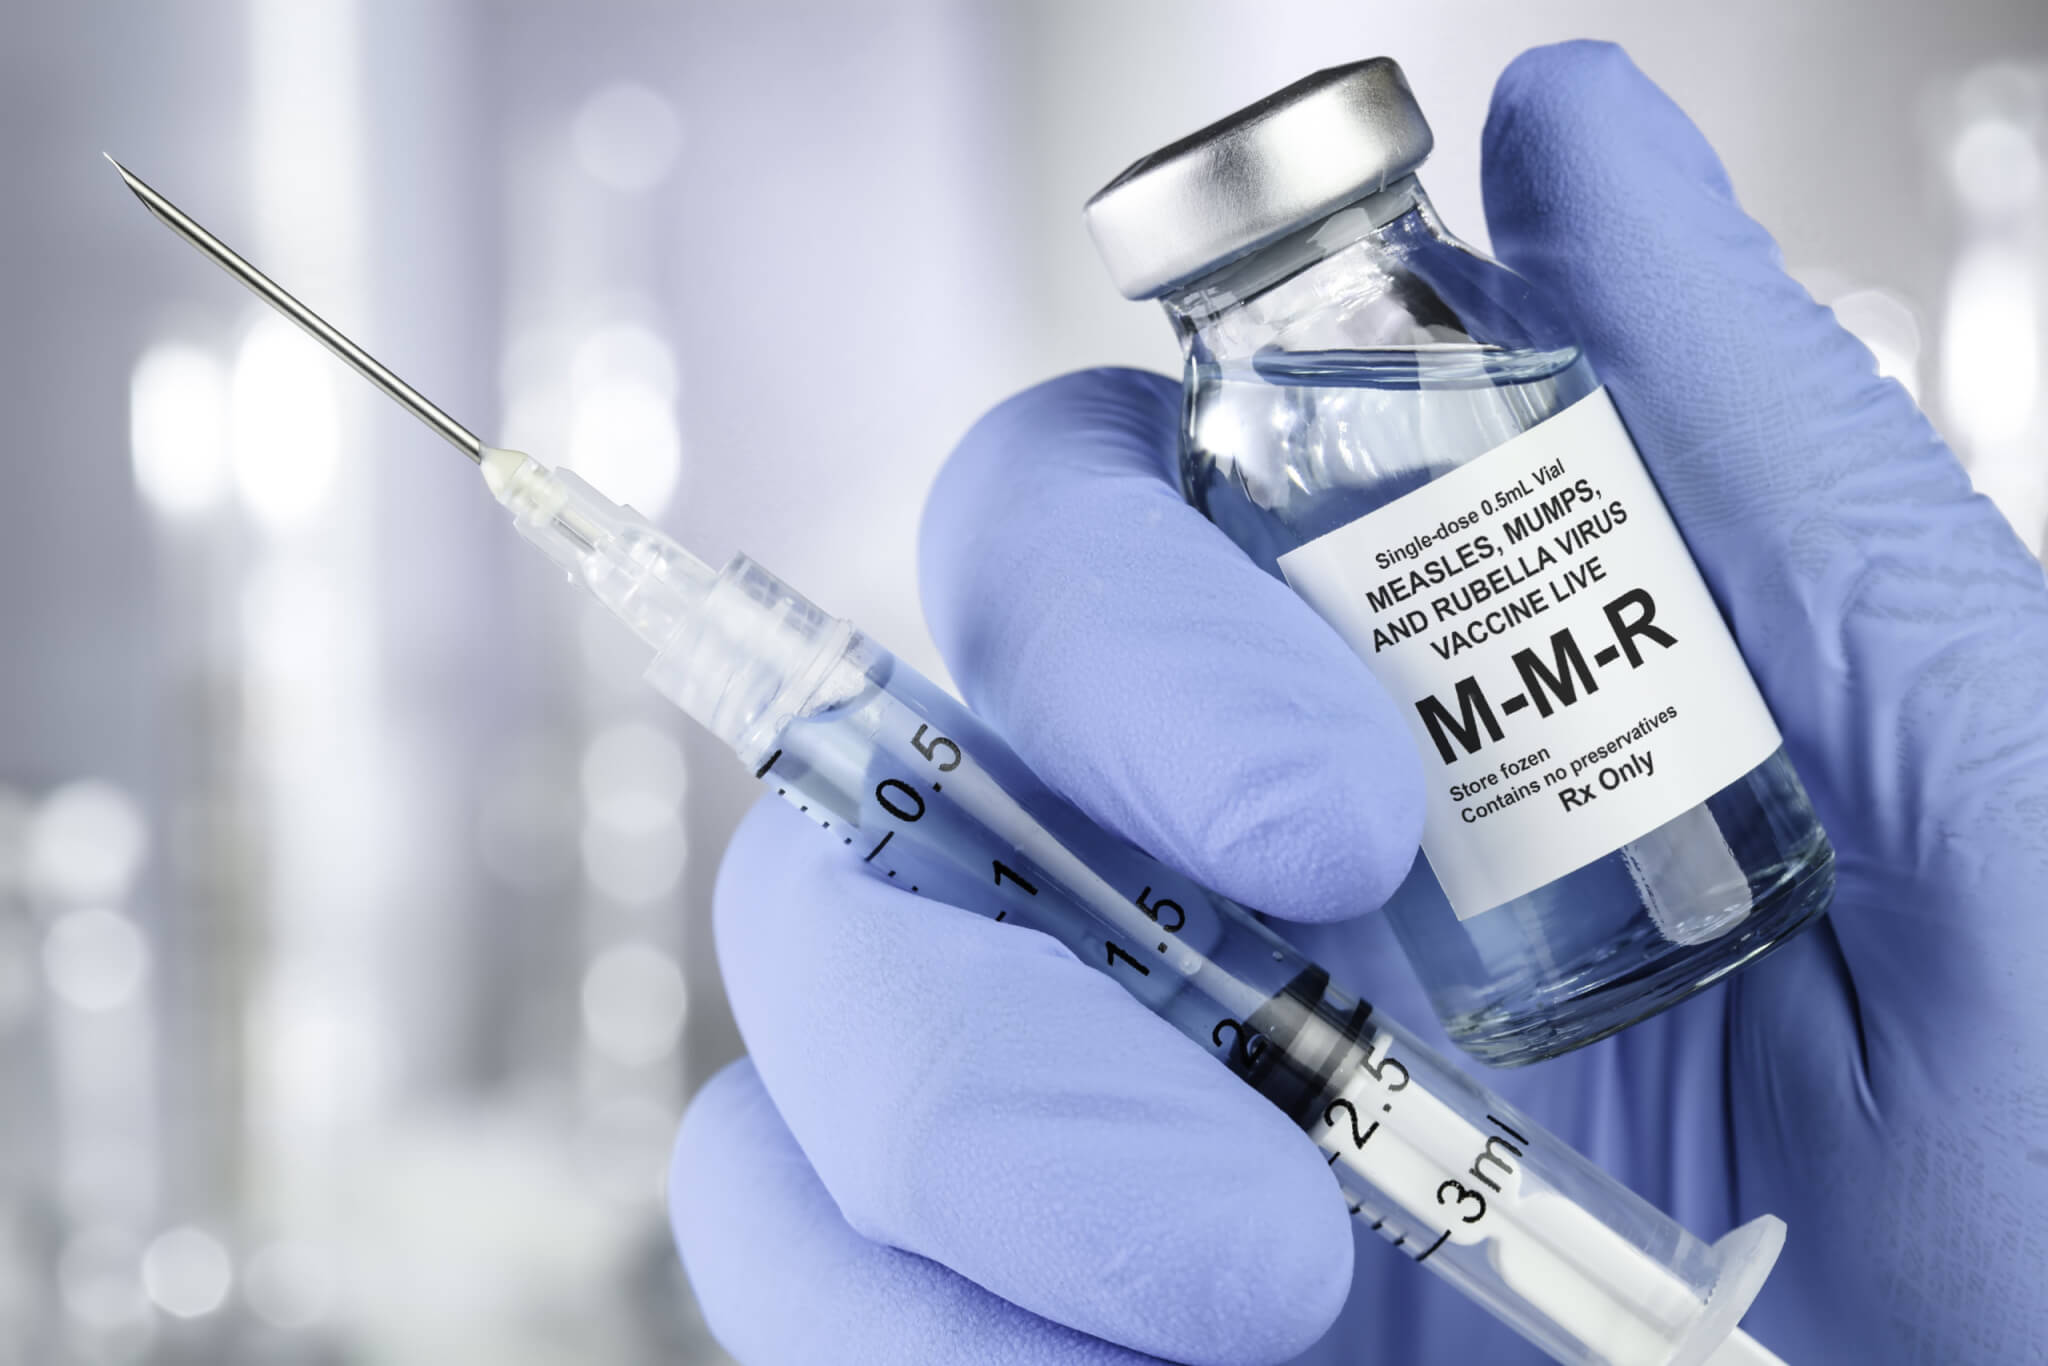 MMR (Measles, Mumps, Rubella) vaccine